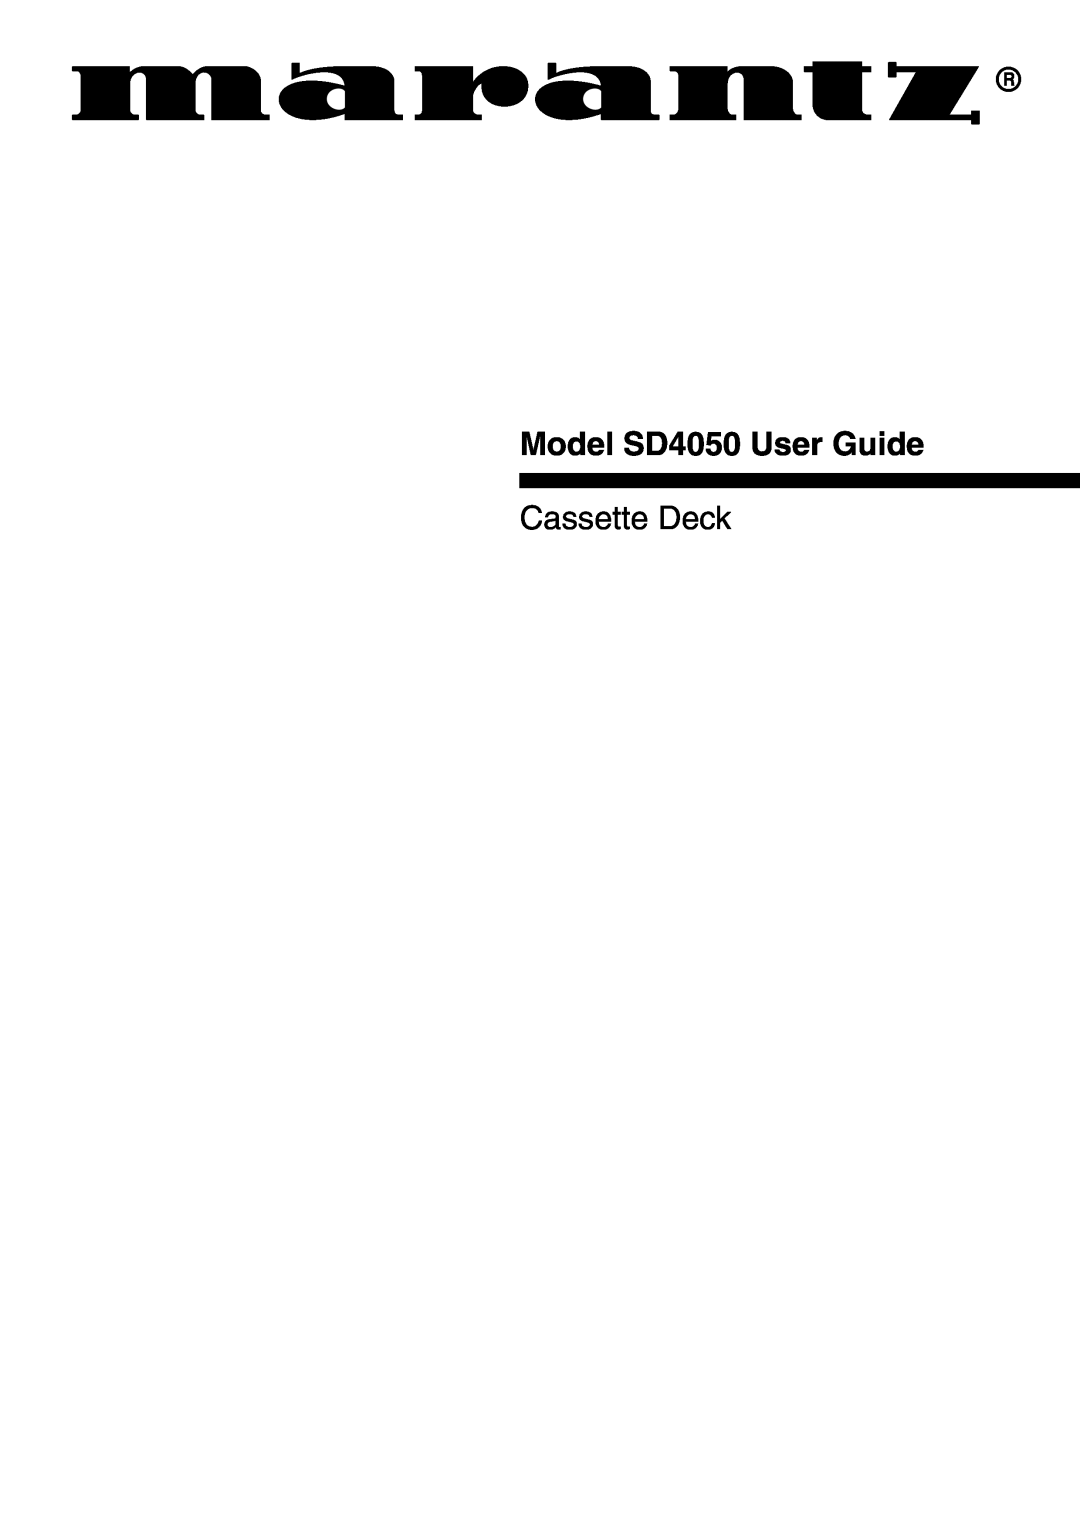 Marantz manual Model SD4050 User Guide, Cassette Deck 